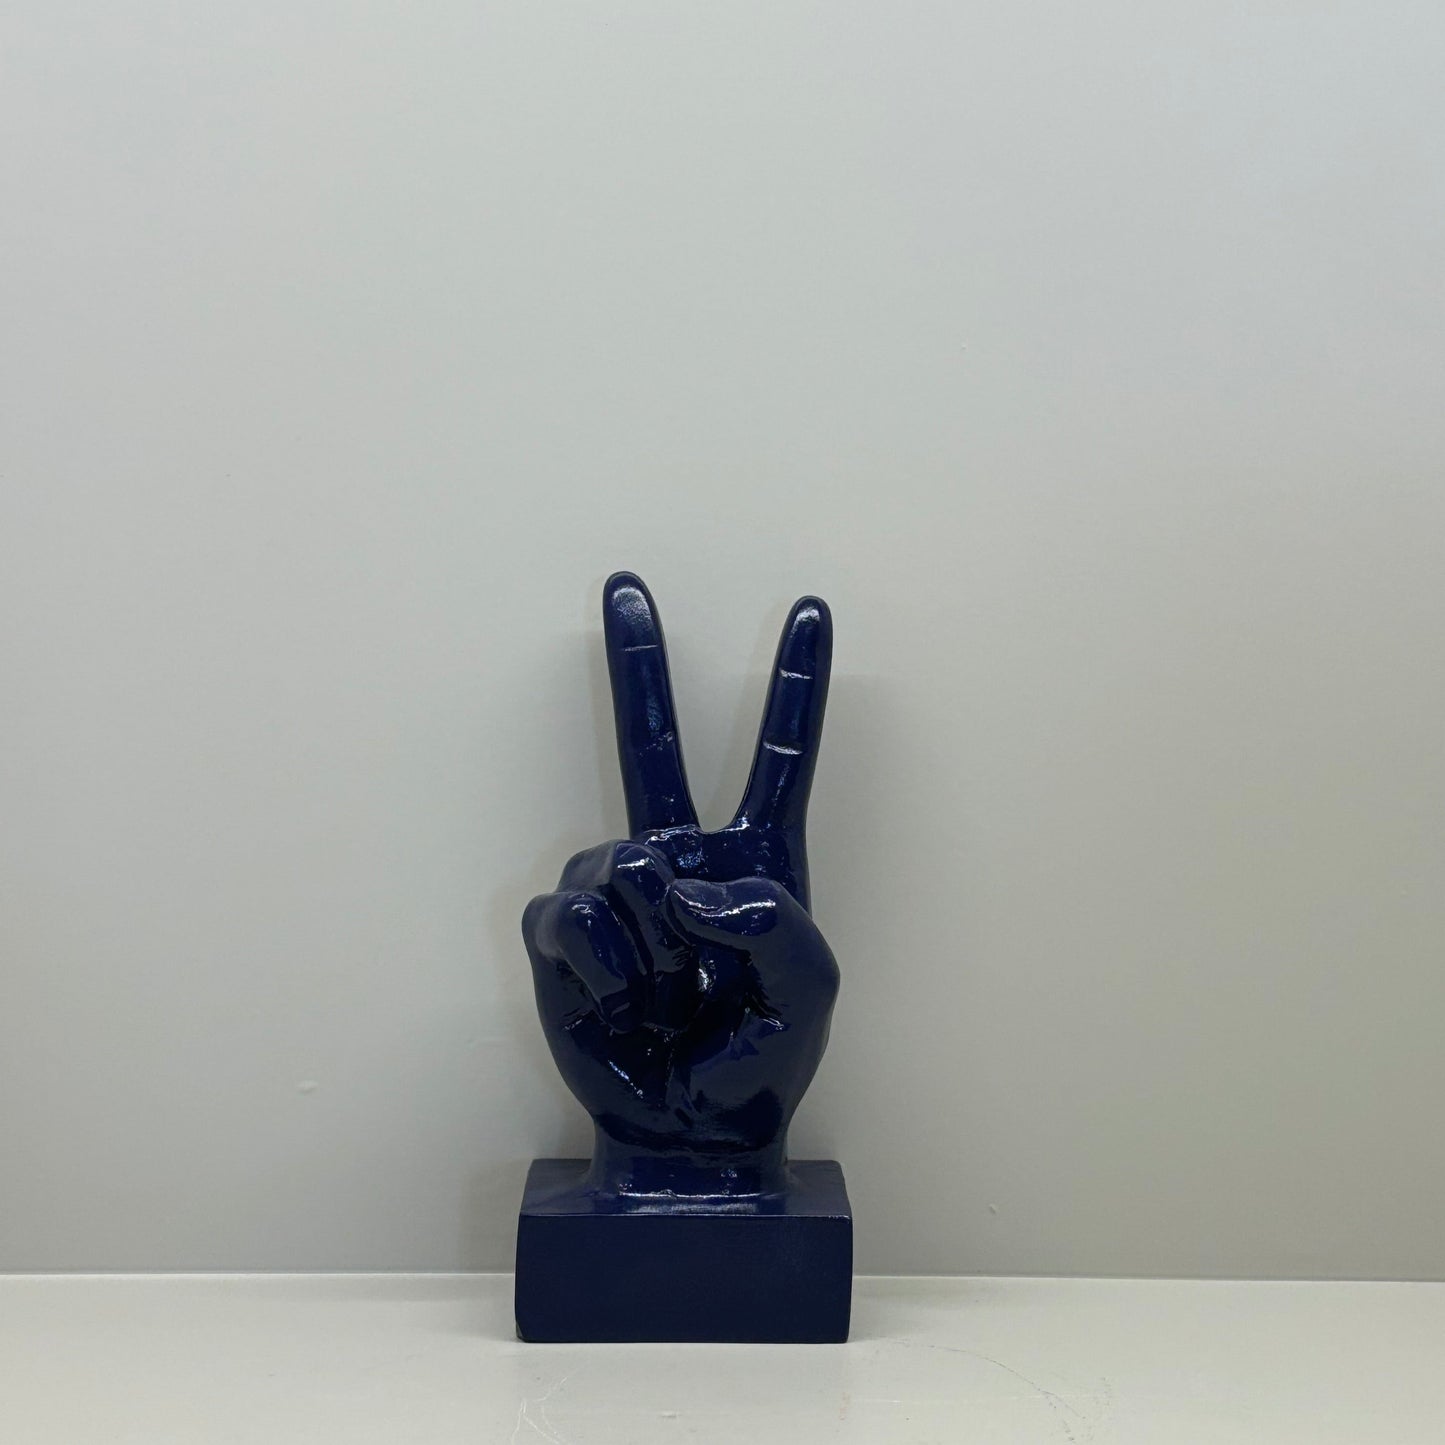 Poise Hand Gesture Sculpture